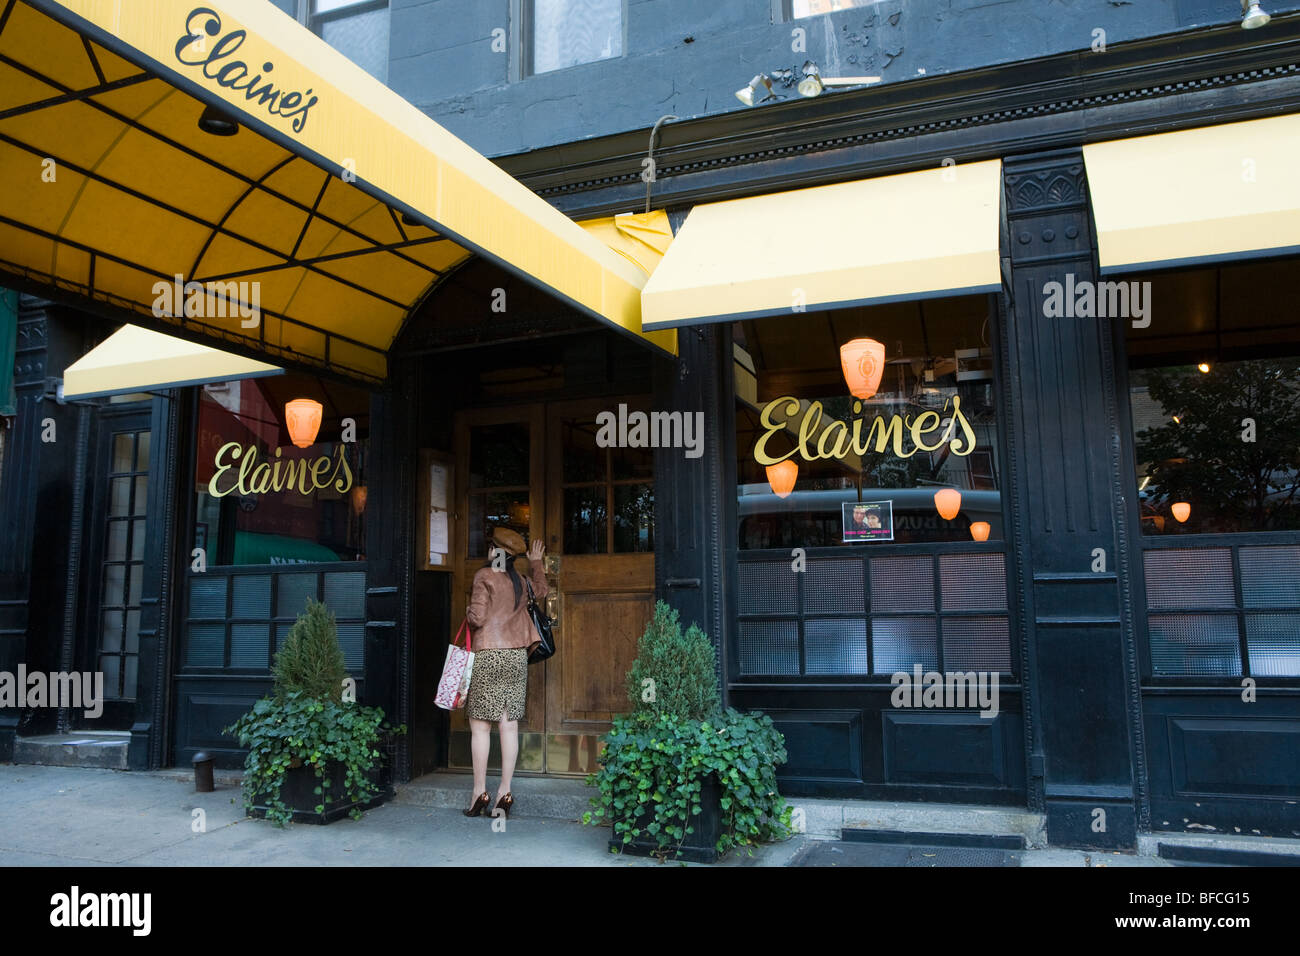 The venerable Elaine's Restaurant, Upper East Side, New York City, USA. Stock Photo